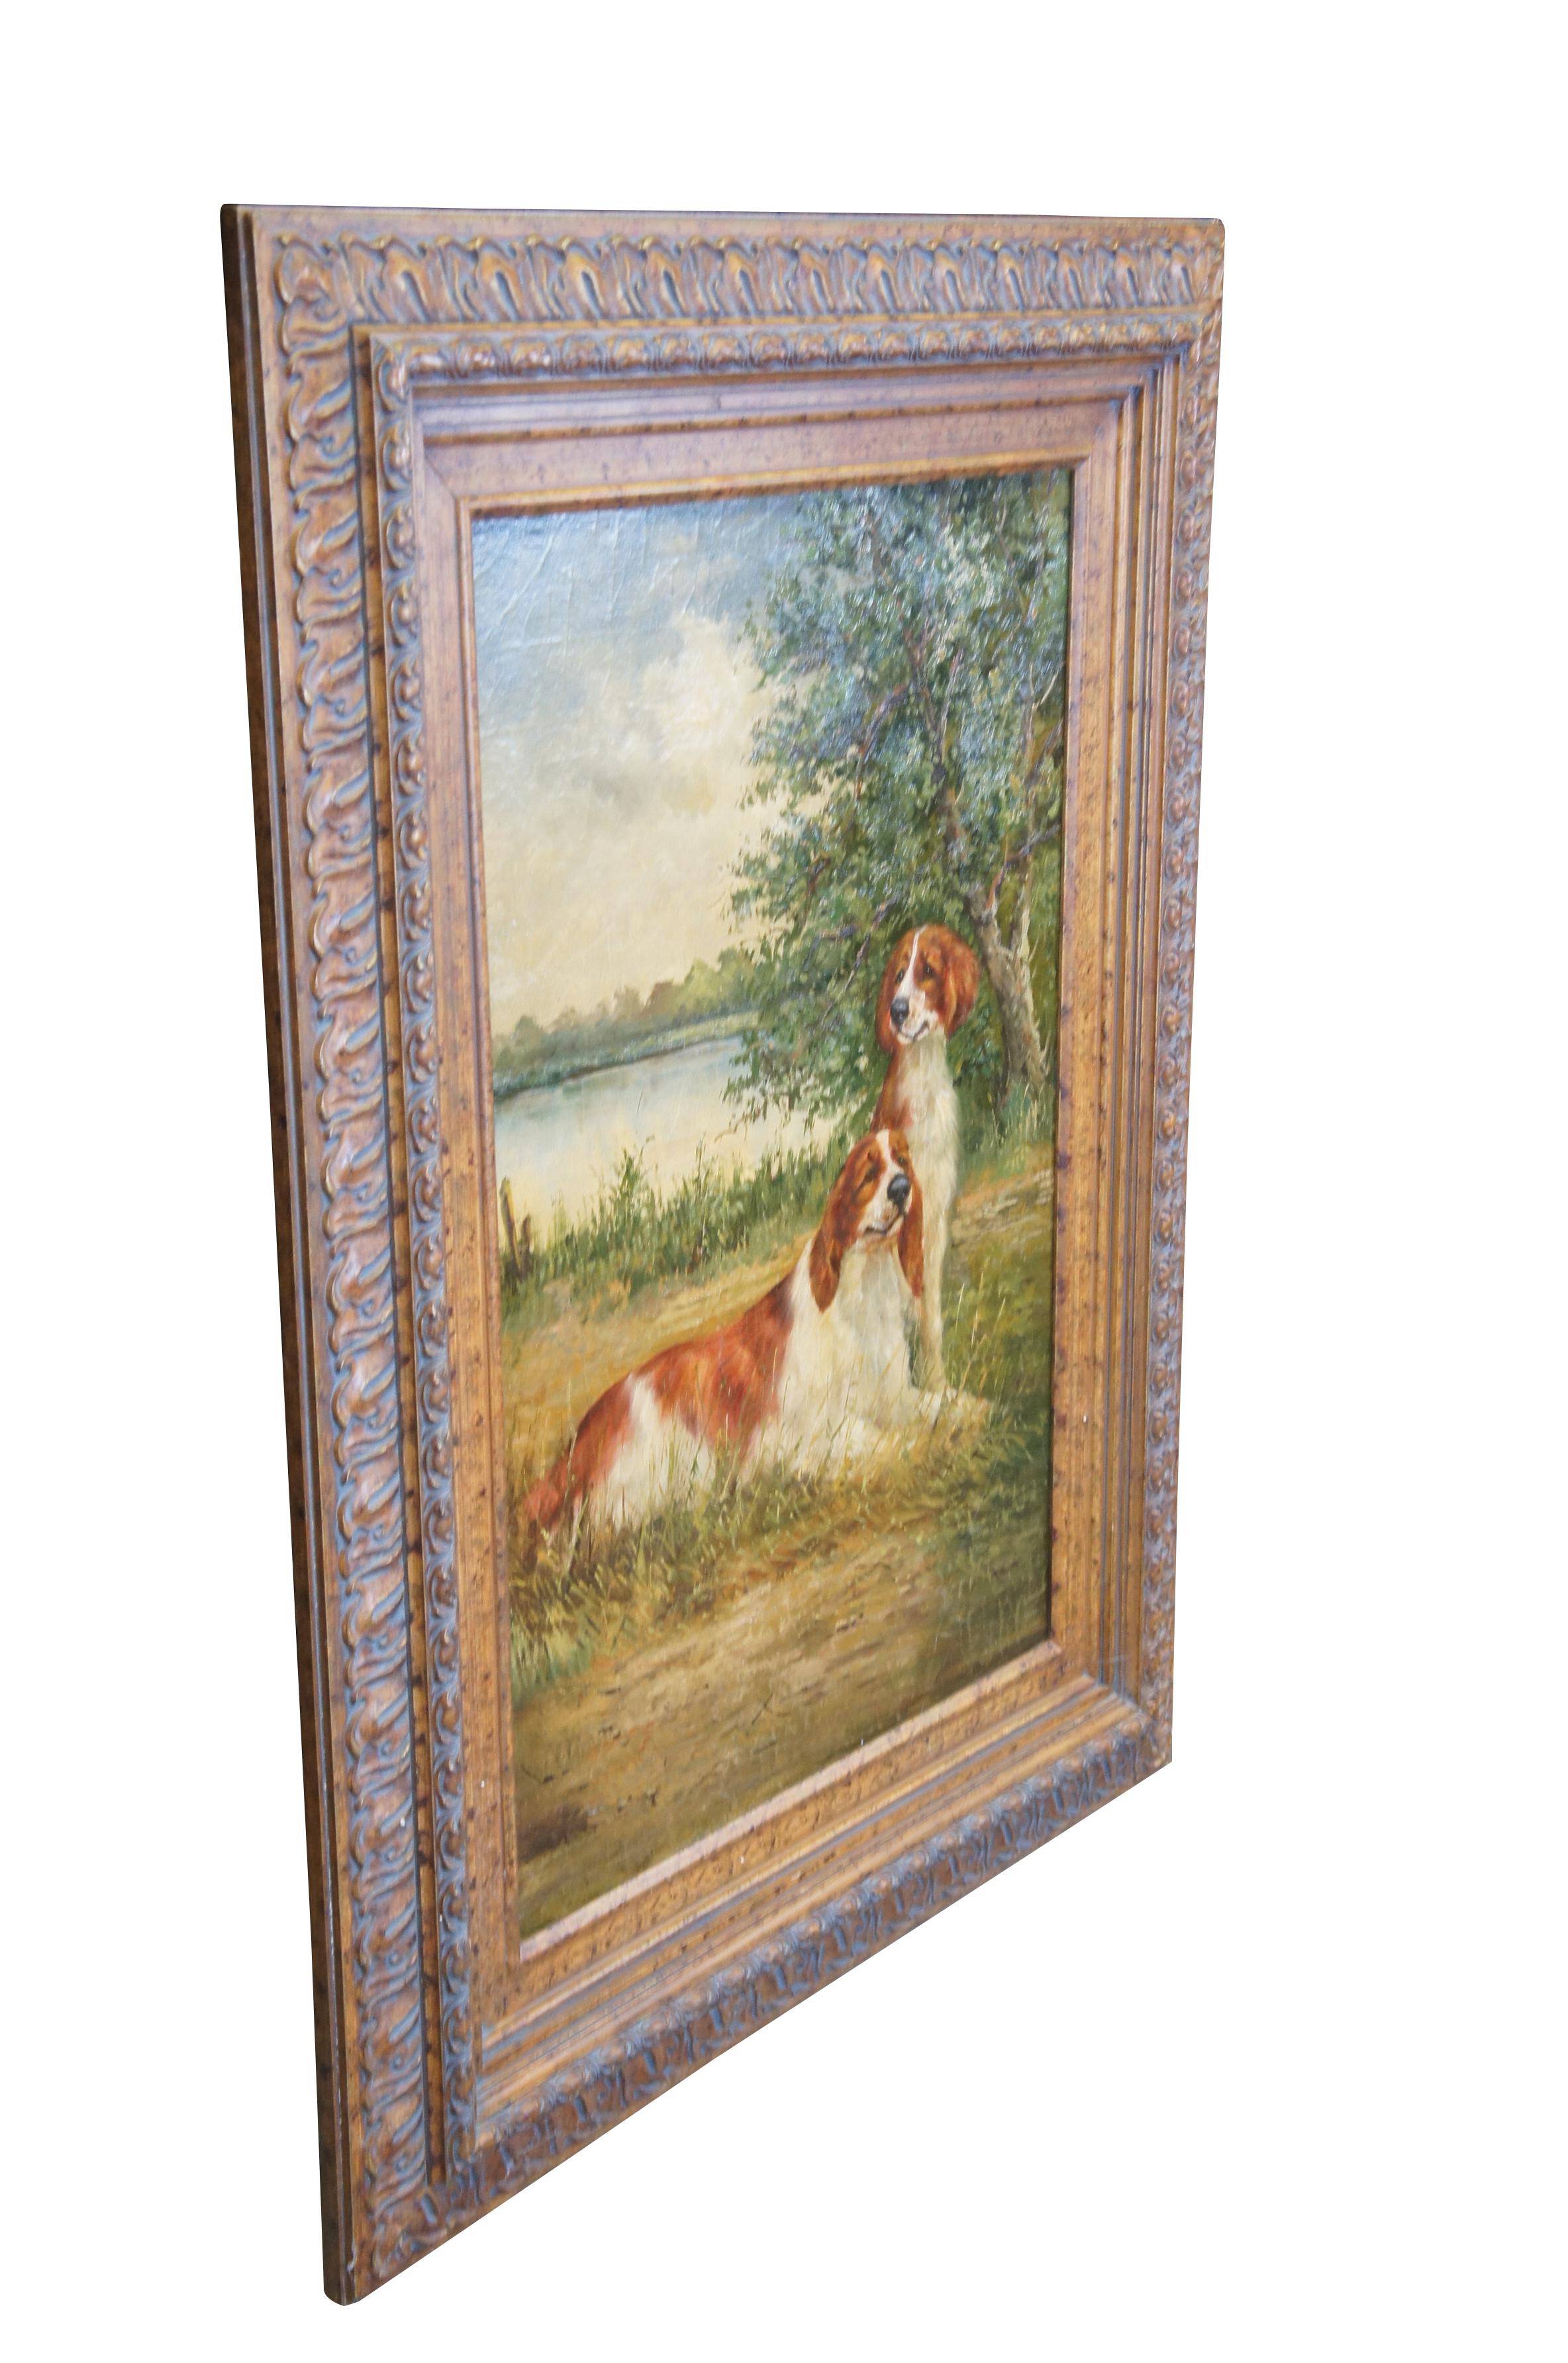 Grand paysage vintage / chien peinture à l'huile sur panneau représentant deux Springer Spaniels rouge / brun et blanc assis devant un grand arbre à côté d'un lac .  Encadré dans un cadre floral doré de style acanthe.

Dimensions :
35.5